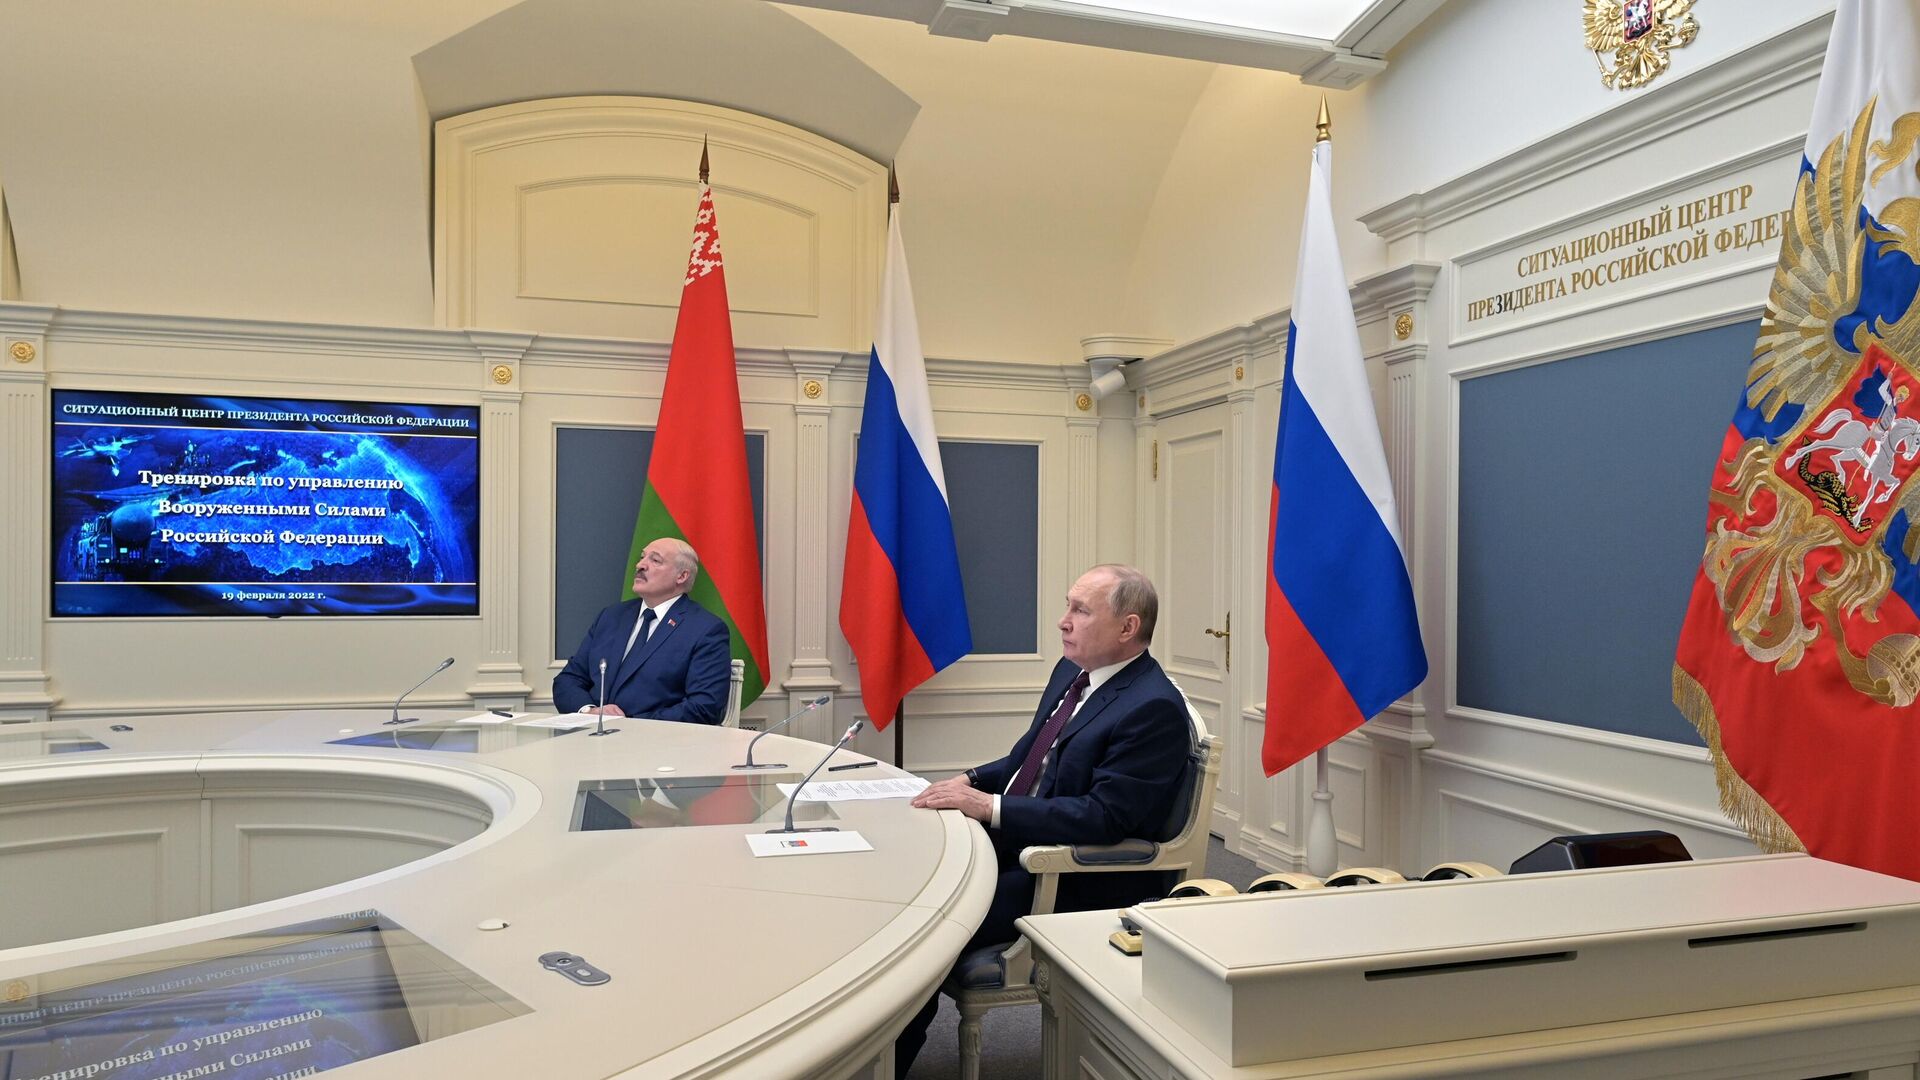  Президент РФ В. Путин дал старт учениям сил стратегического сдерживания с пусками баллистических ракет - Sputnik Таджикистан, 1920, 19.02.2022